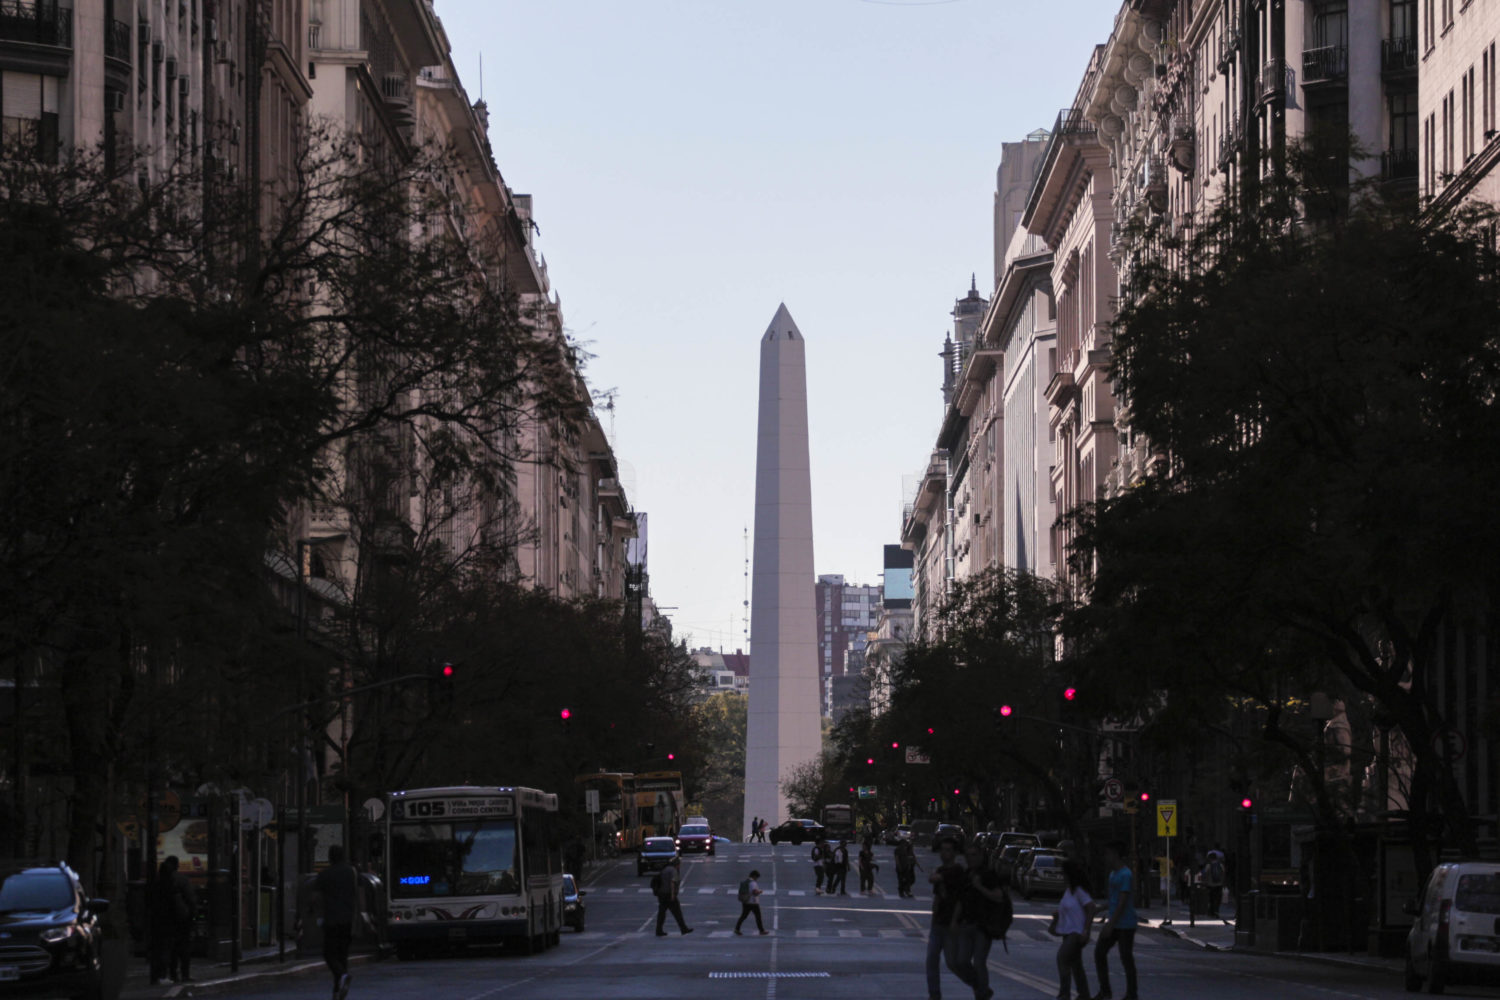 vista central do obelisco buenos aires de buenos aires na argentina